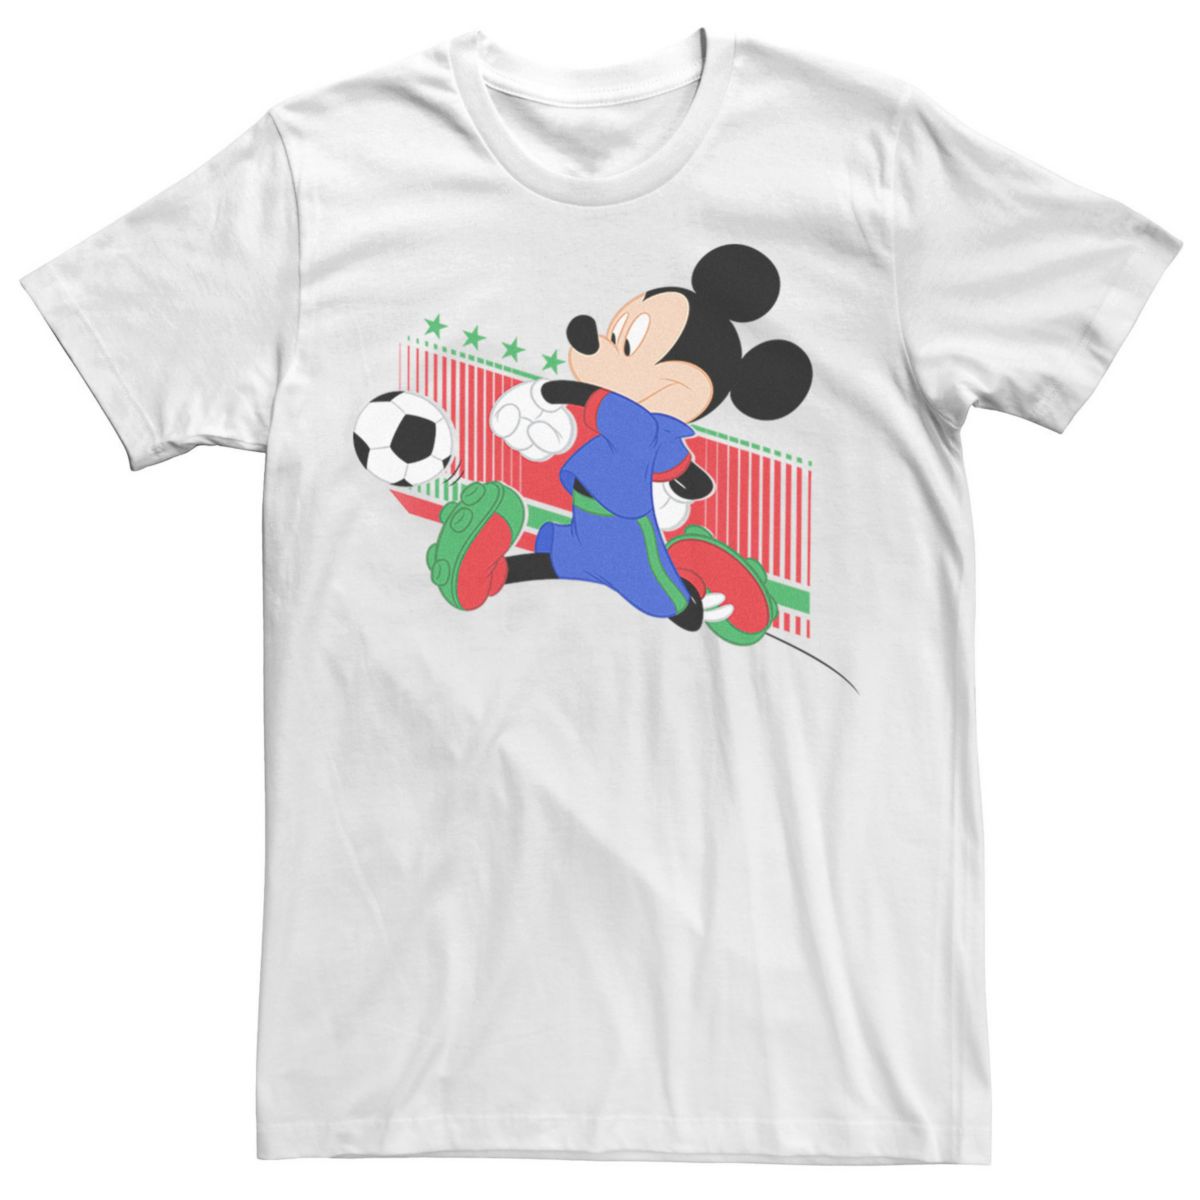 Мужская футболка с портретной формой Disney Mickey Mouse Italy Disney